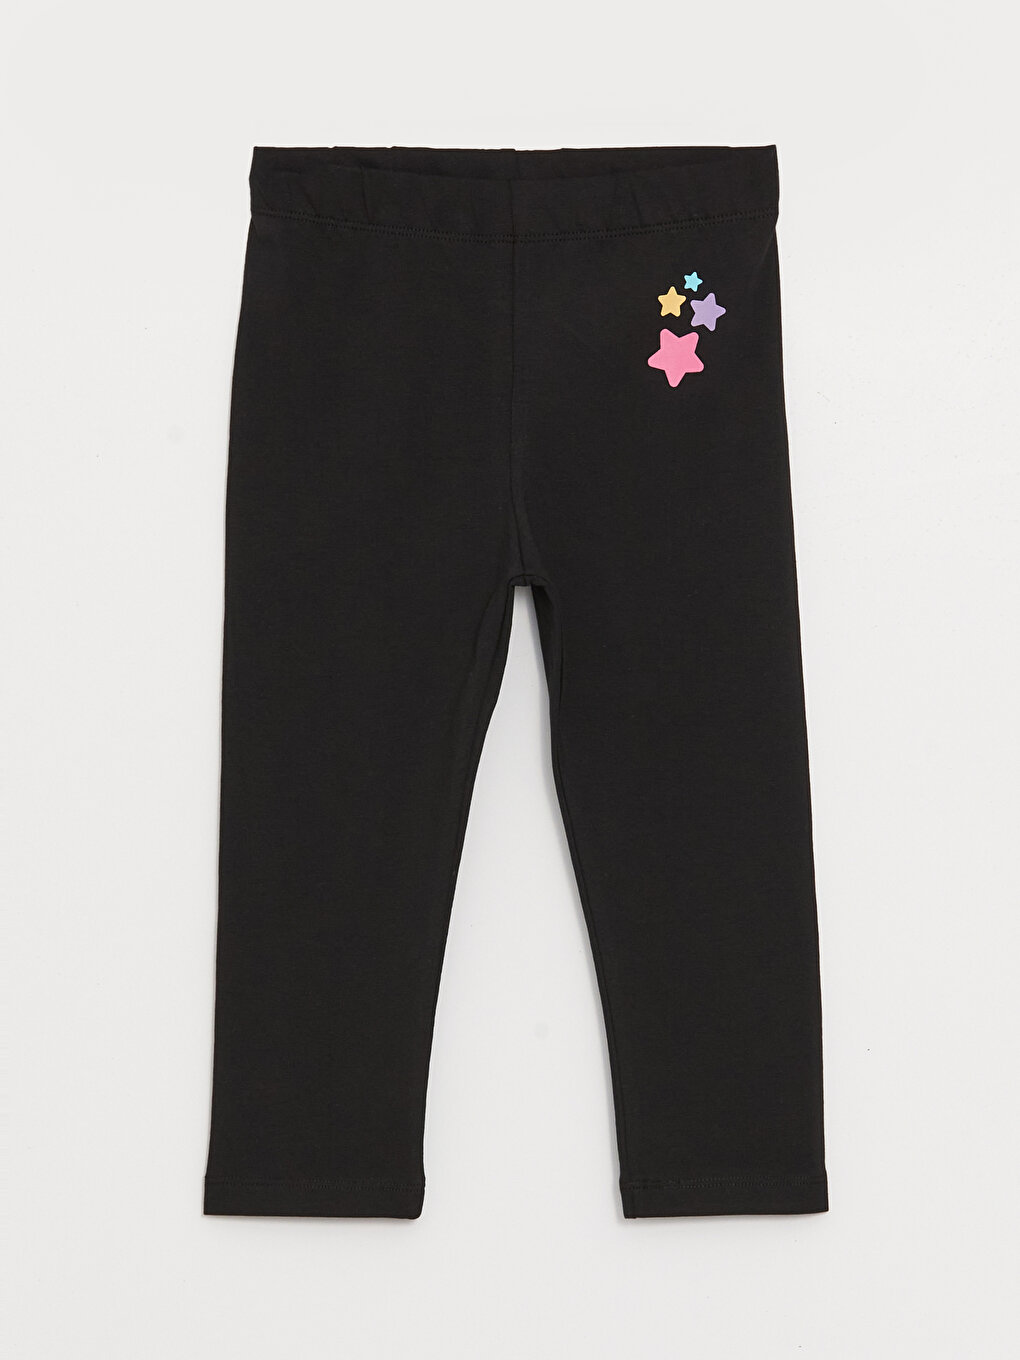 New Children Kids Cropped Cotton Leggings 3/4 Length Girls Capri Pants Age 3-12  | eBay